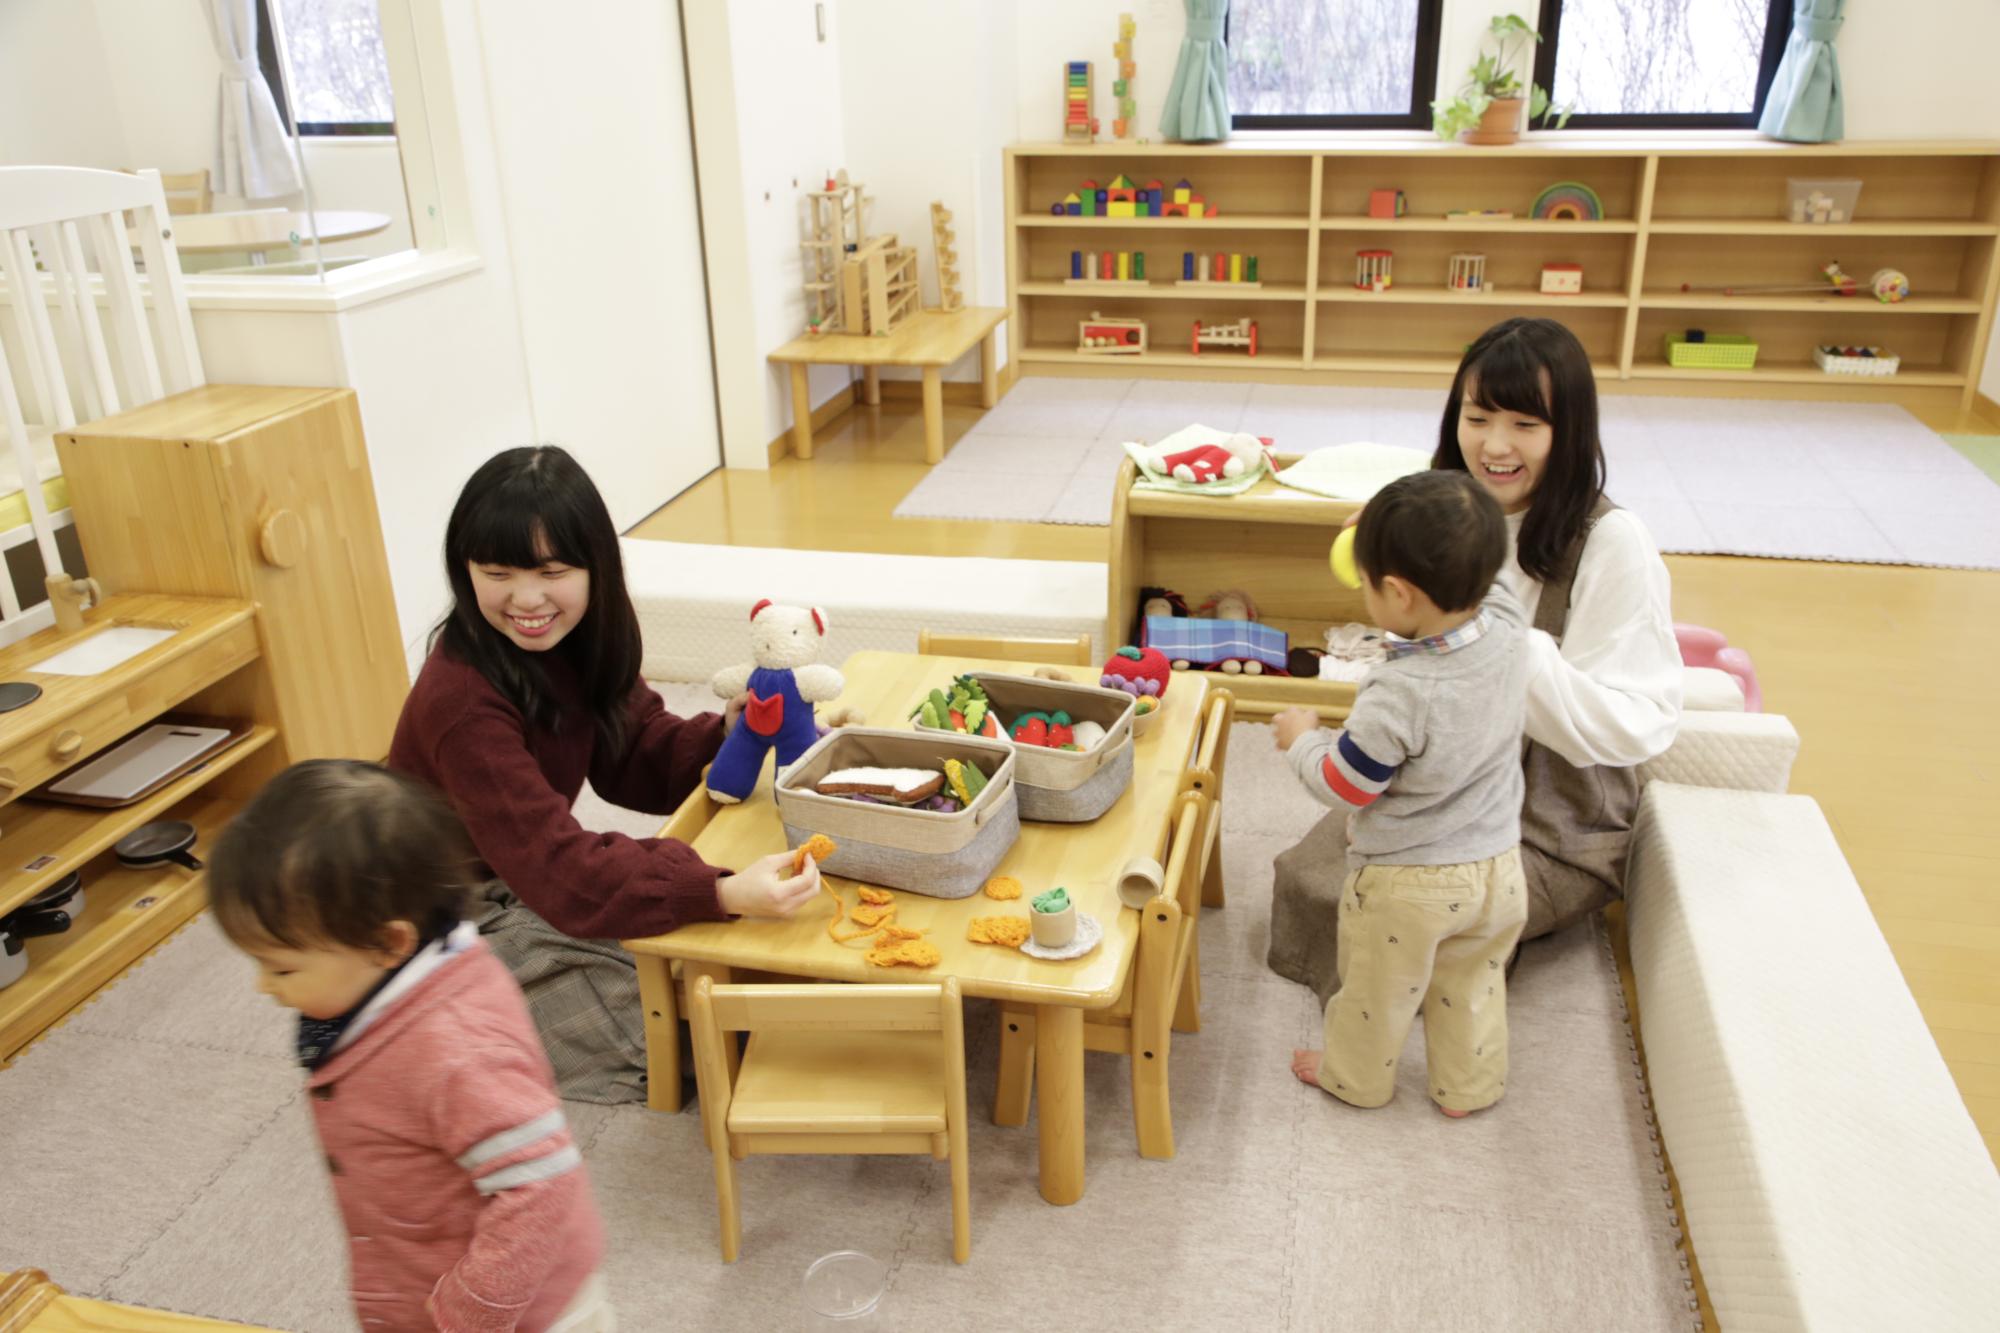 子供センターで行われてる子育て支援「さぽさぽ」で子供たちとふれあっている学生の様子を写した写真。中央に子供用の小さなテーブルや椅子が置かれており、ぬいぐるみ等のおもちゃが並んでいる。